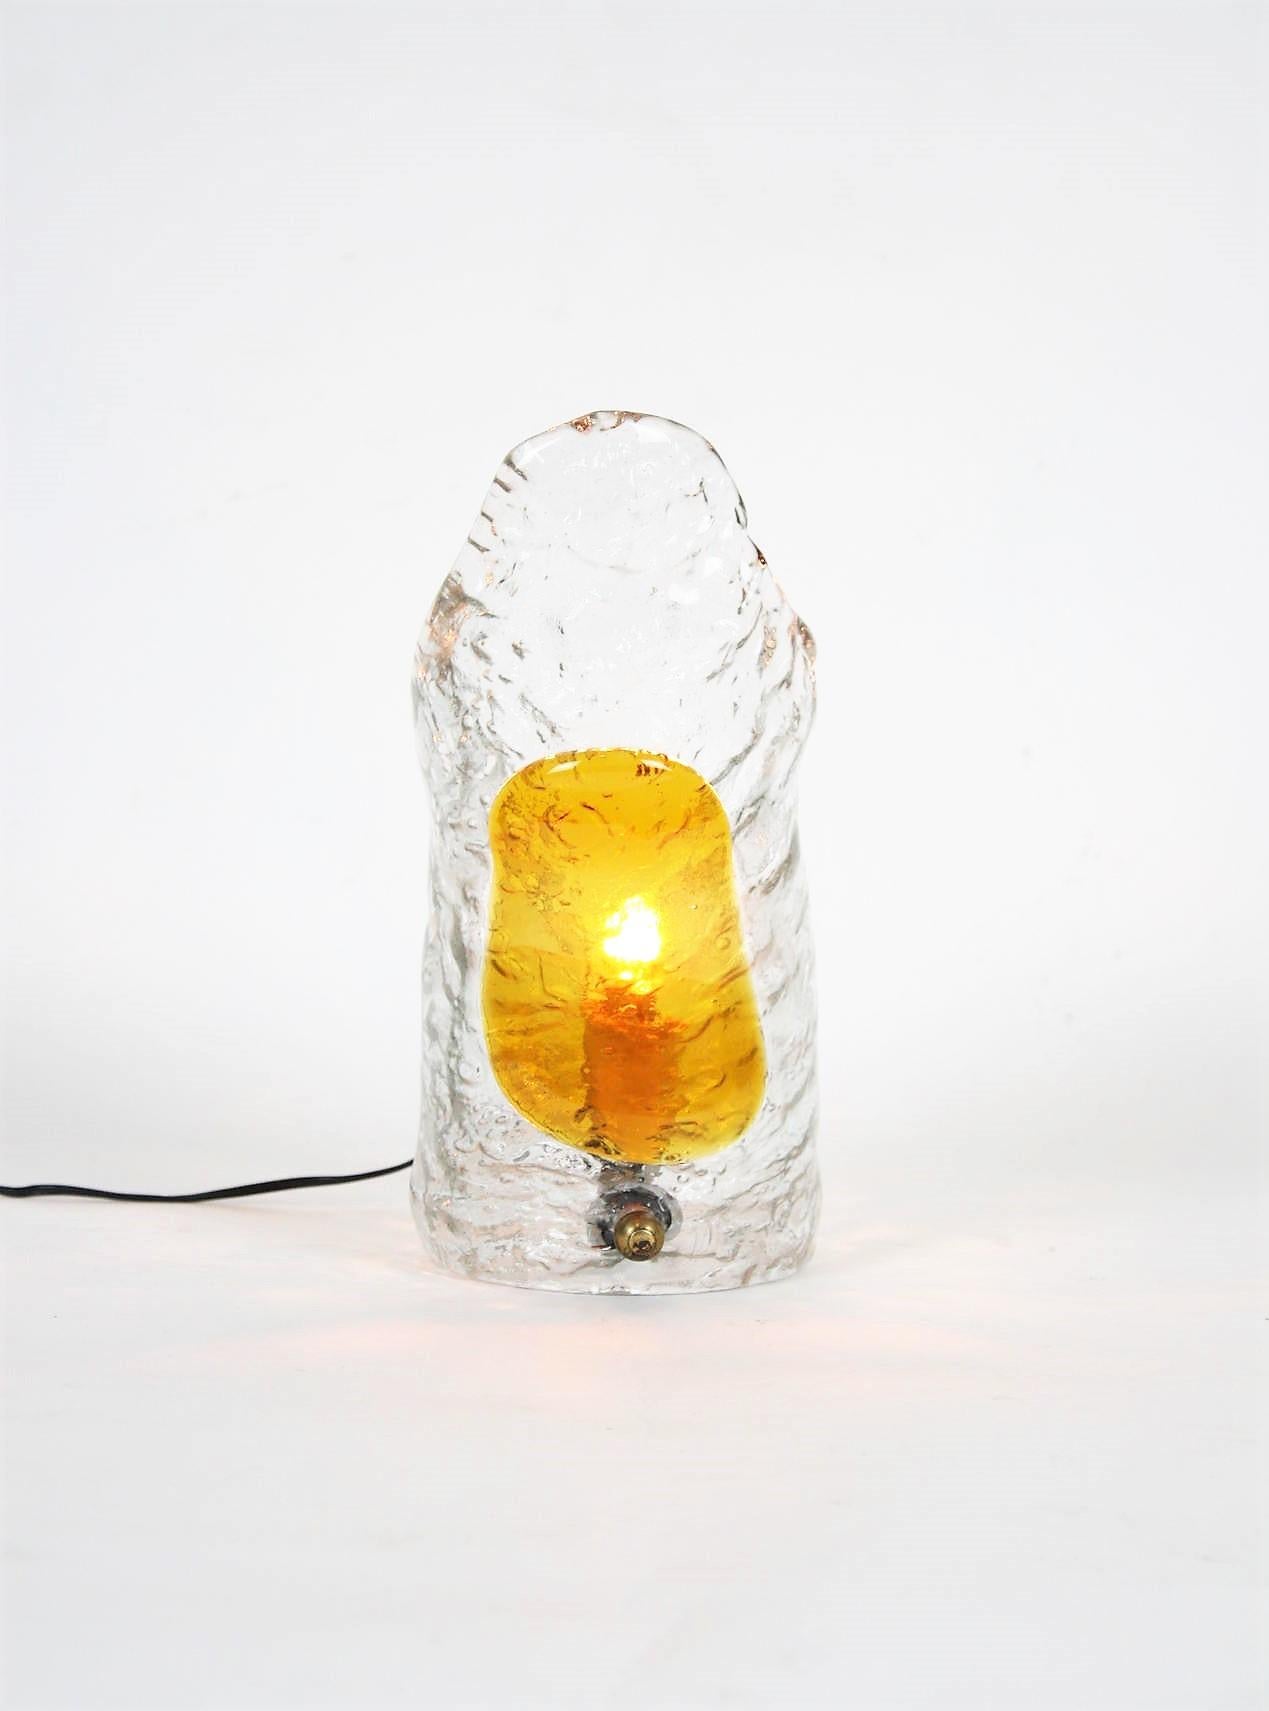 Lampe de table en verre soufflé à la main de Murano fabriquée par Mazzega, Italie, années 1960.
Verre texturé ambré et clair.
Cette magnifique lampe présente un abat-jour vertical en verre ambré appliqué sur du verre texturé transparent. Il est doté